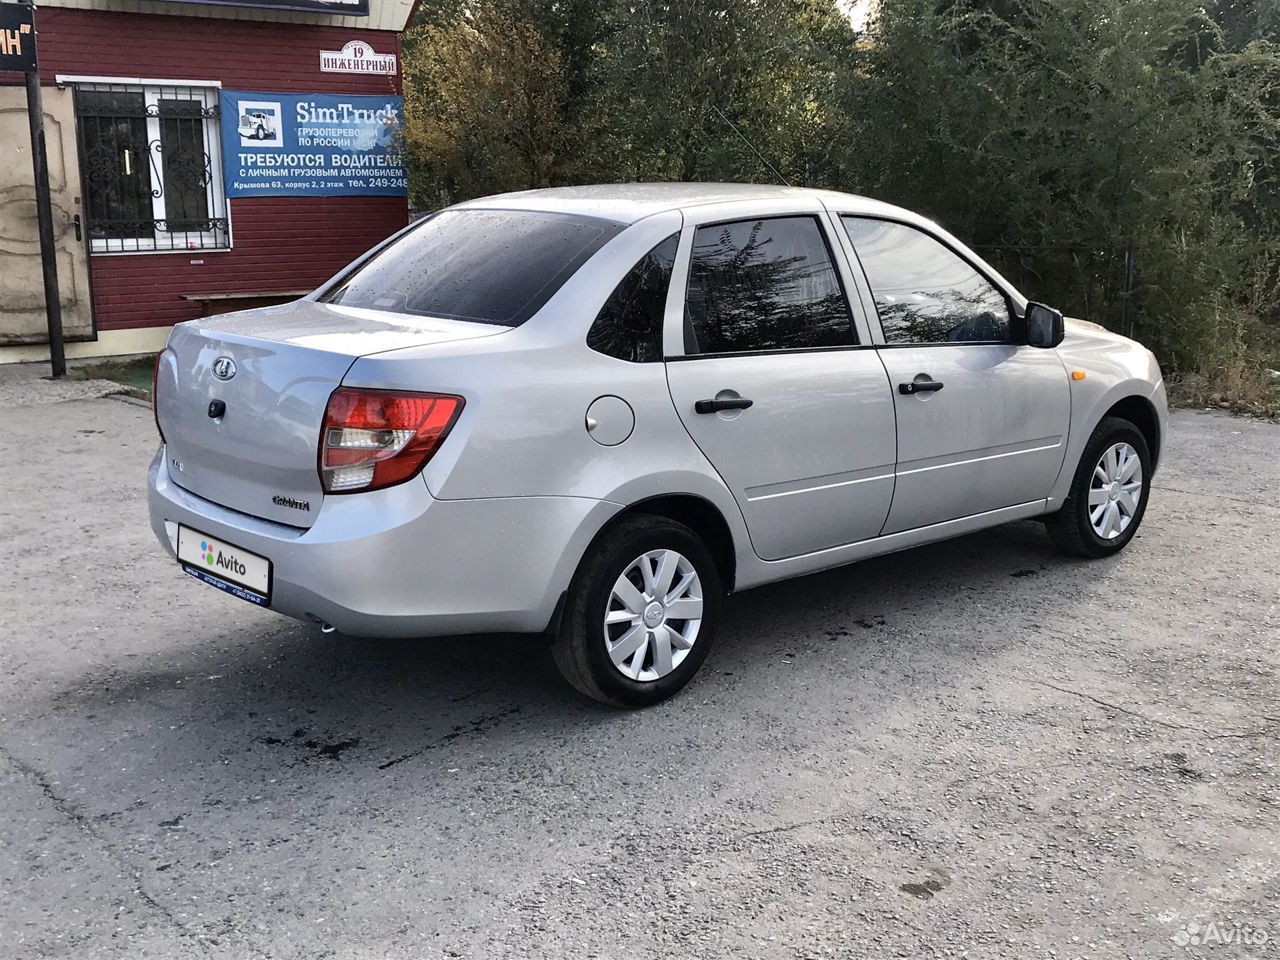 Купить авто в ульяновске и области